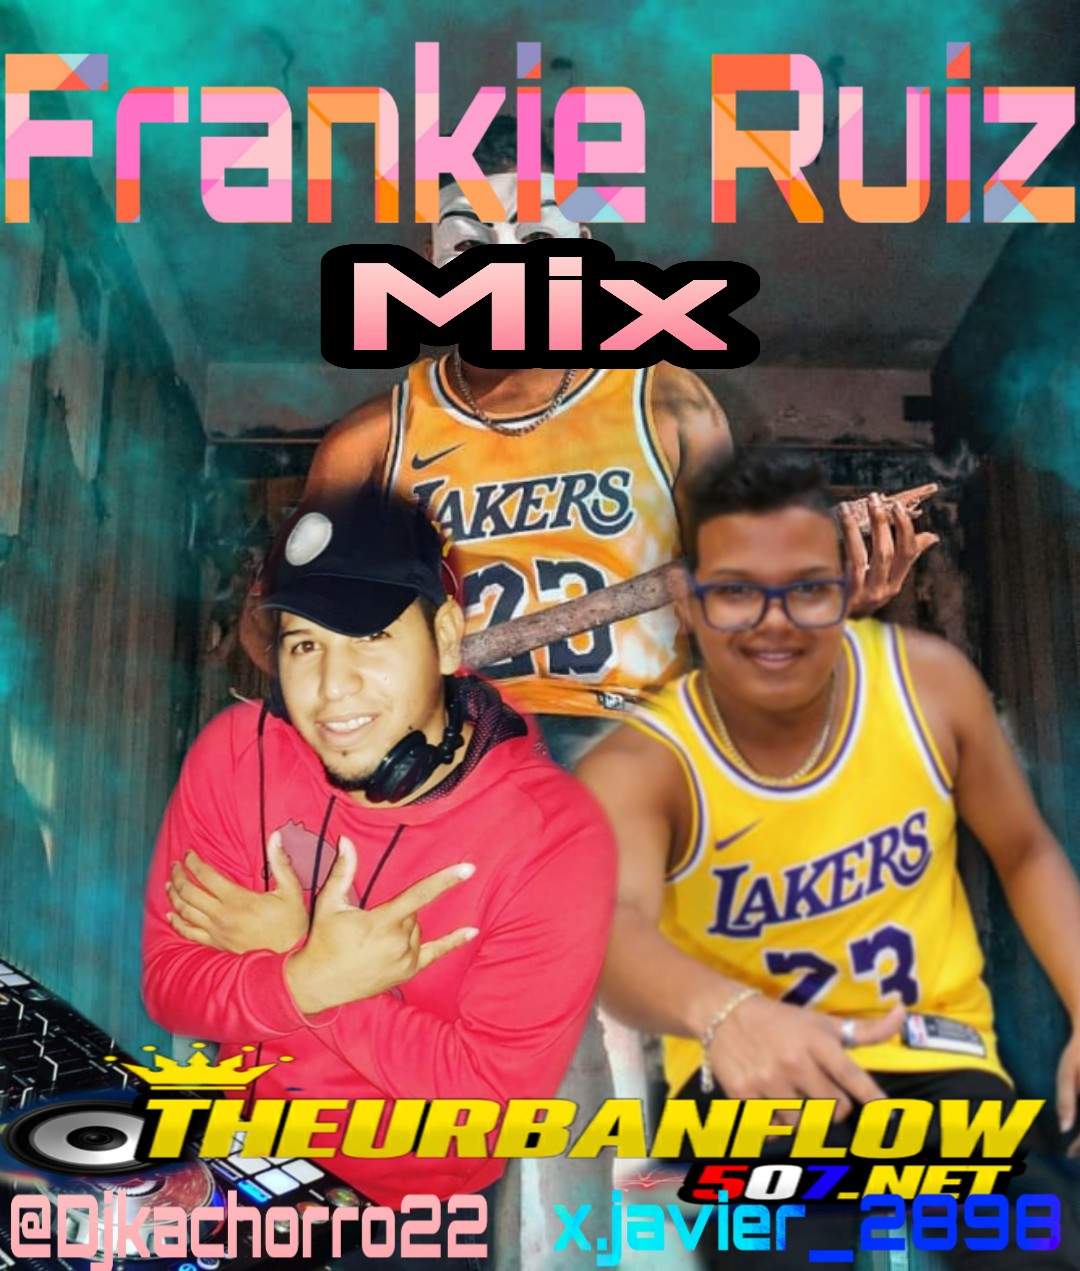 FrankieRuiz Mix - @DJkachorro22